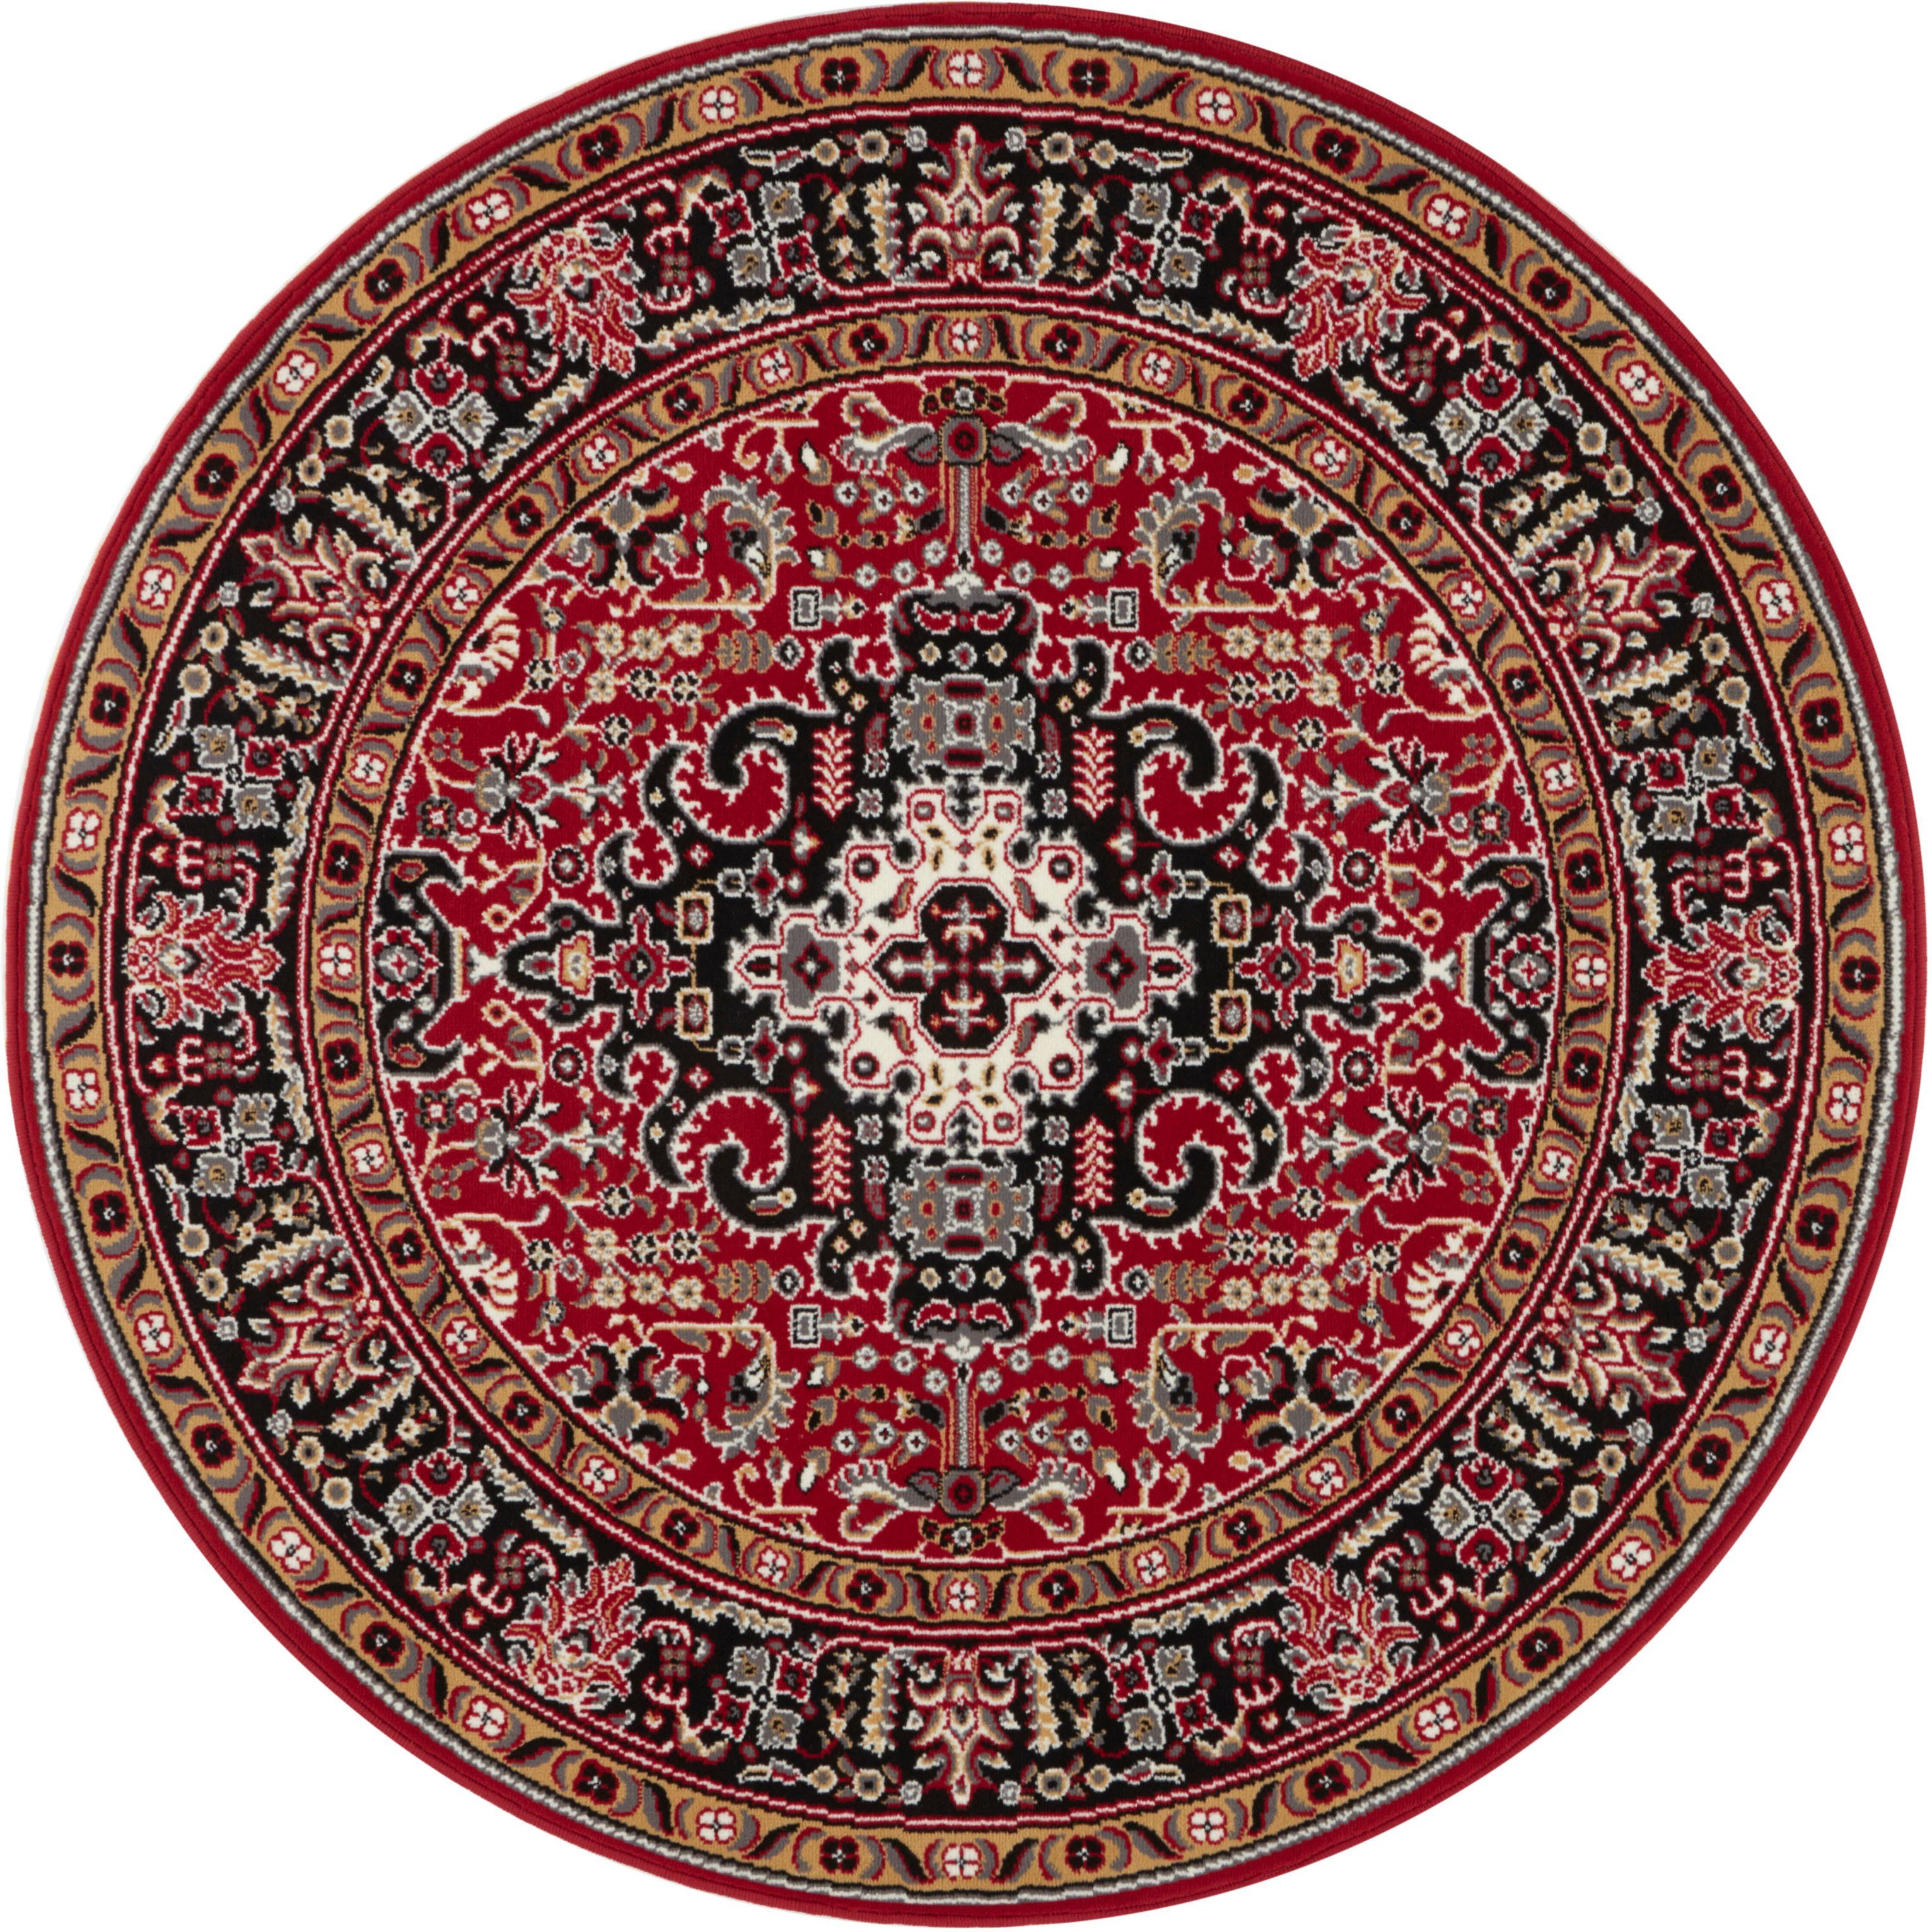 Klassiek vloerkleed rond Skazar Isfahan - rood/zwart 160 cm rond